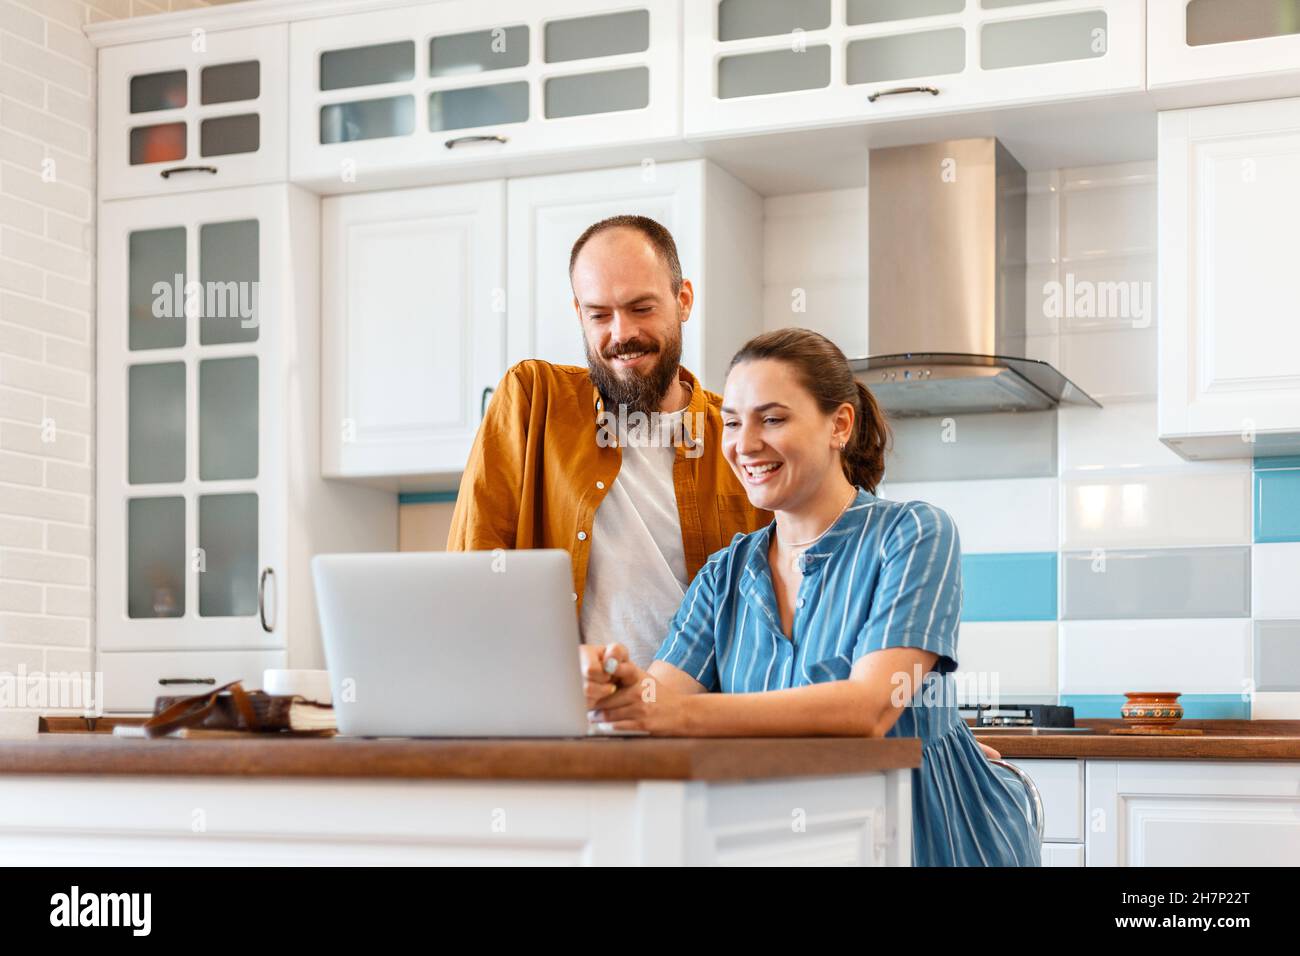 Lächelndes junges Ehepaar, das zu Hause in der Küche per Videoanruf mit einem Laptop spricht. Frau und Mann freuen sich über gute Nachrichten aus der E-Mail in zu hören Stockfoto